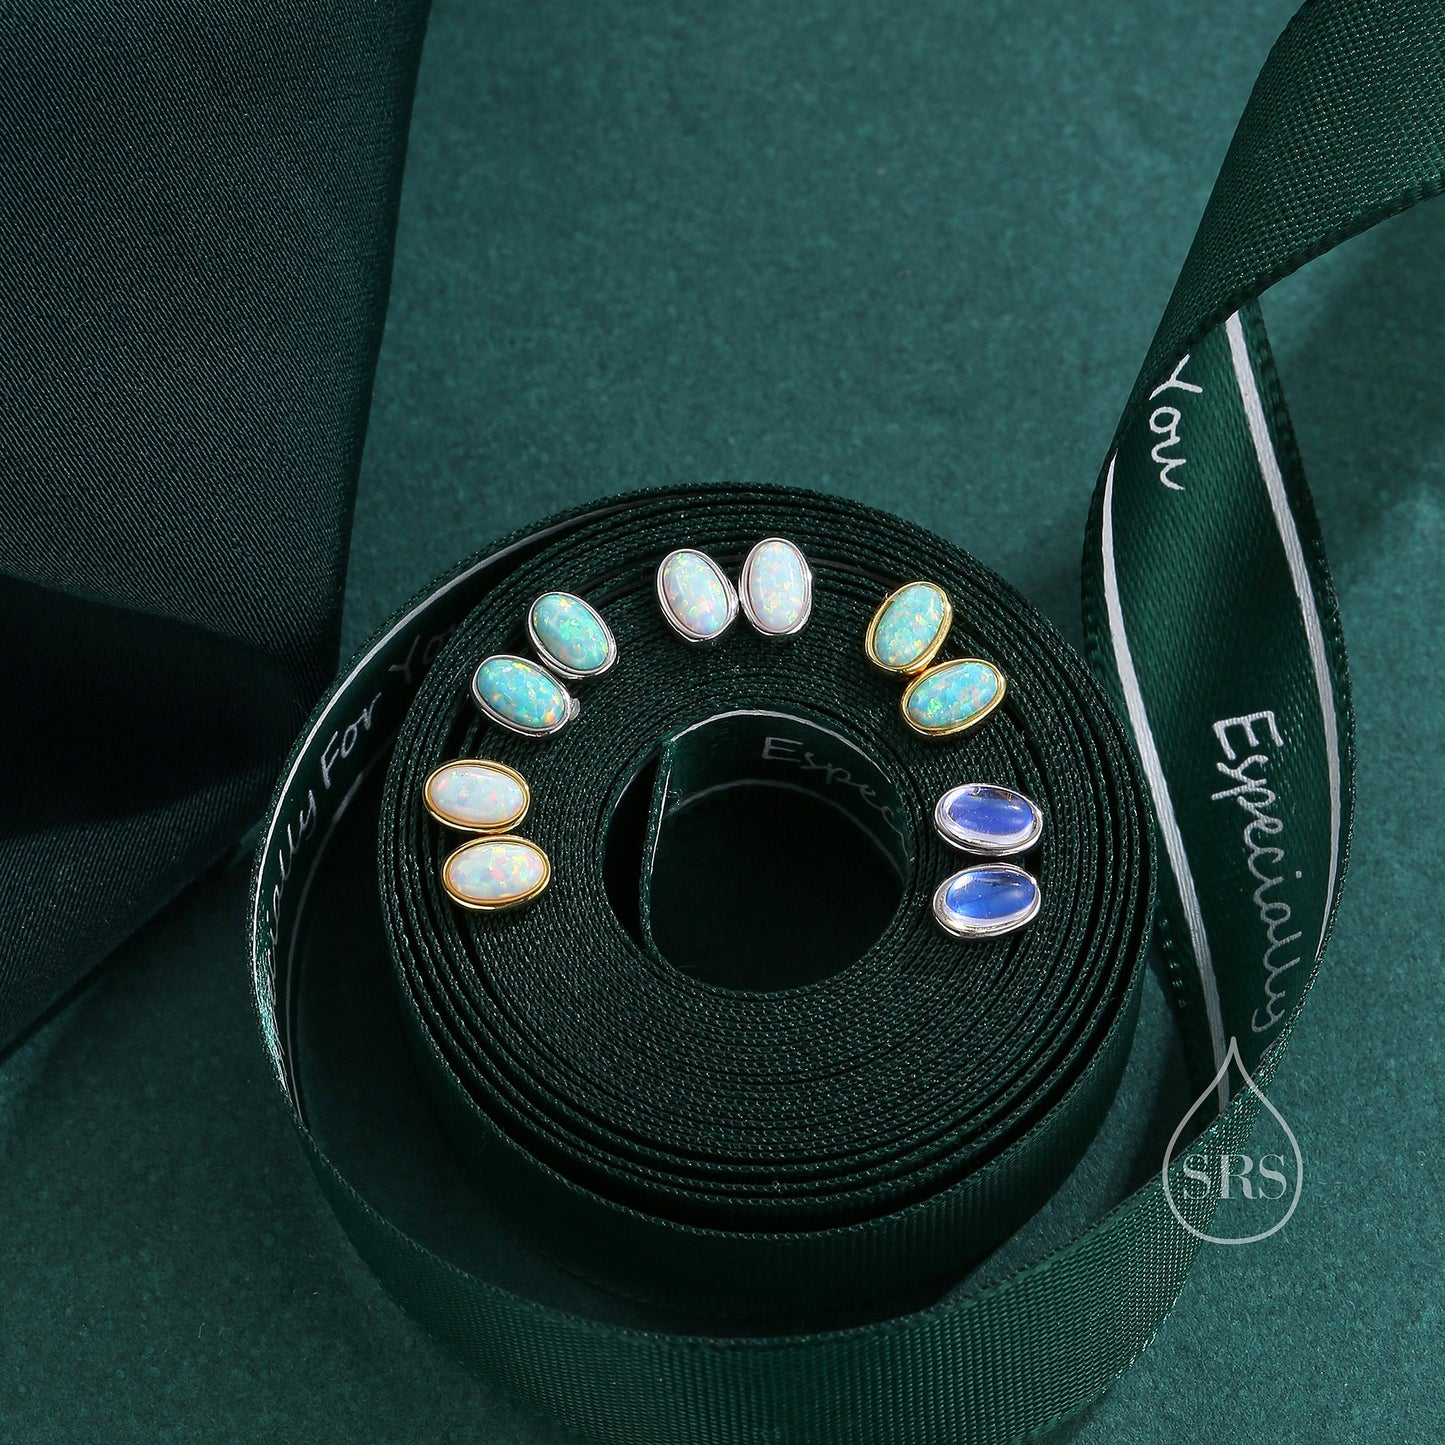 Sterling Silver Oval Opal Stud Earrings, Silver or Gold, White Opal or Green Opal? Opal Earrings, Minimalist Opal Earrings